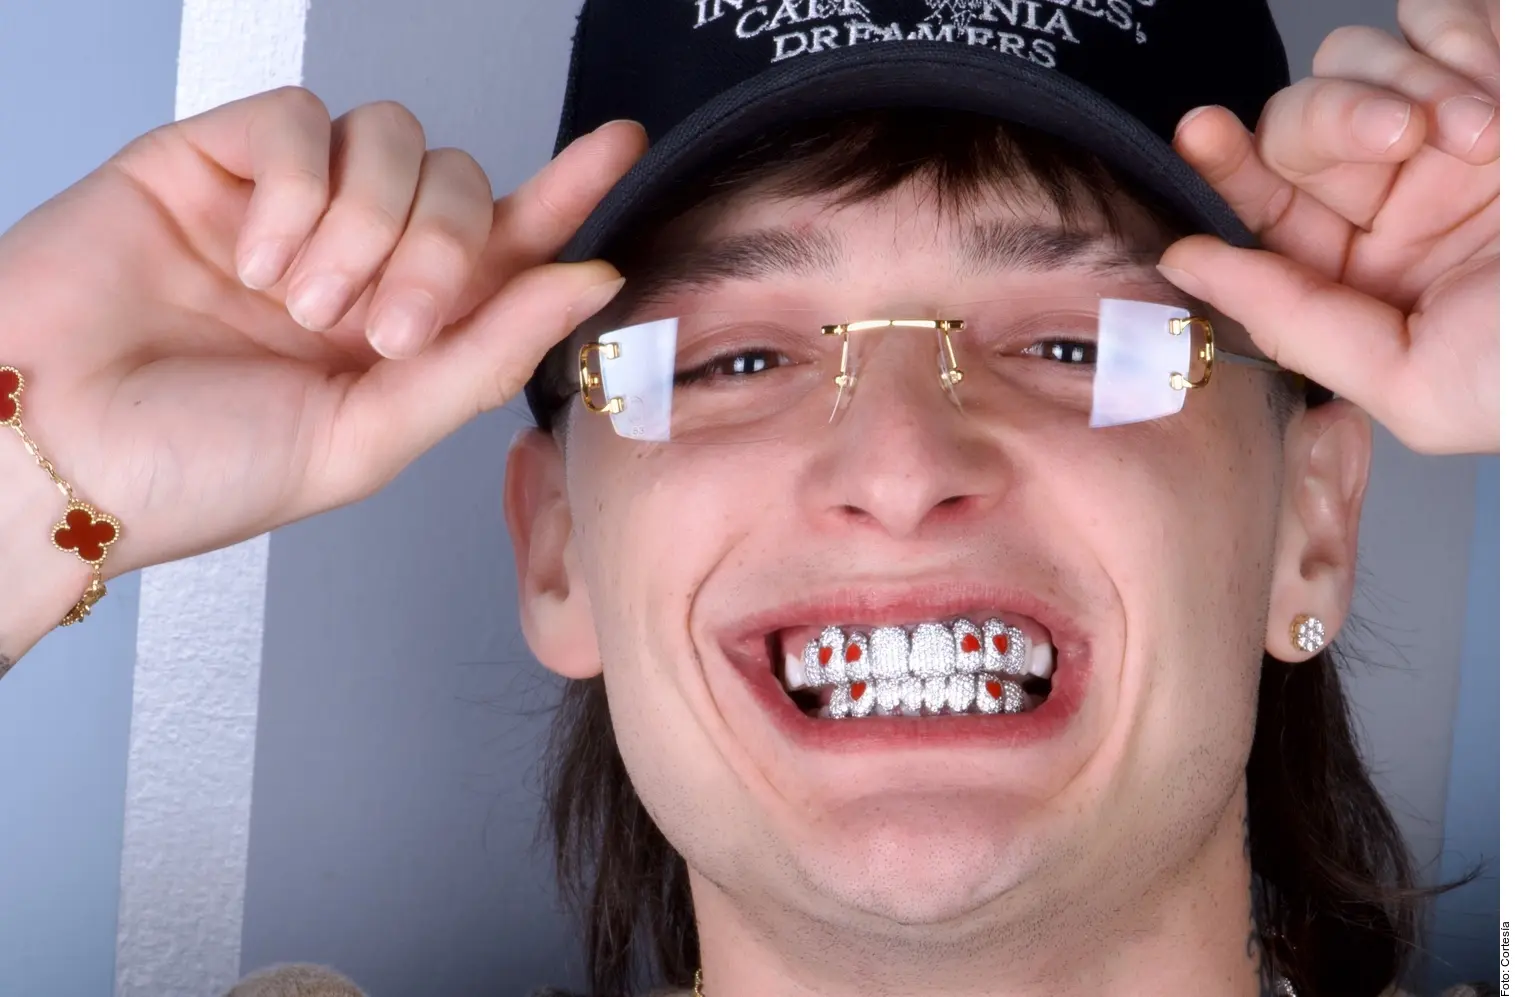 cuanto cuesta un diente de plata - Cómo se llaman los dientes de plata